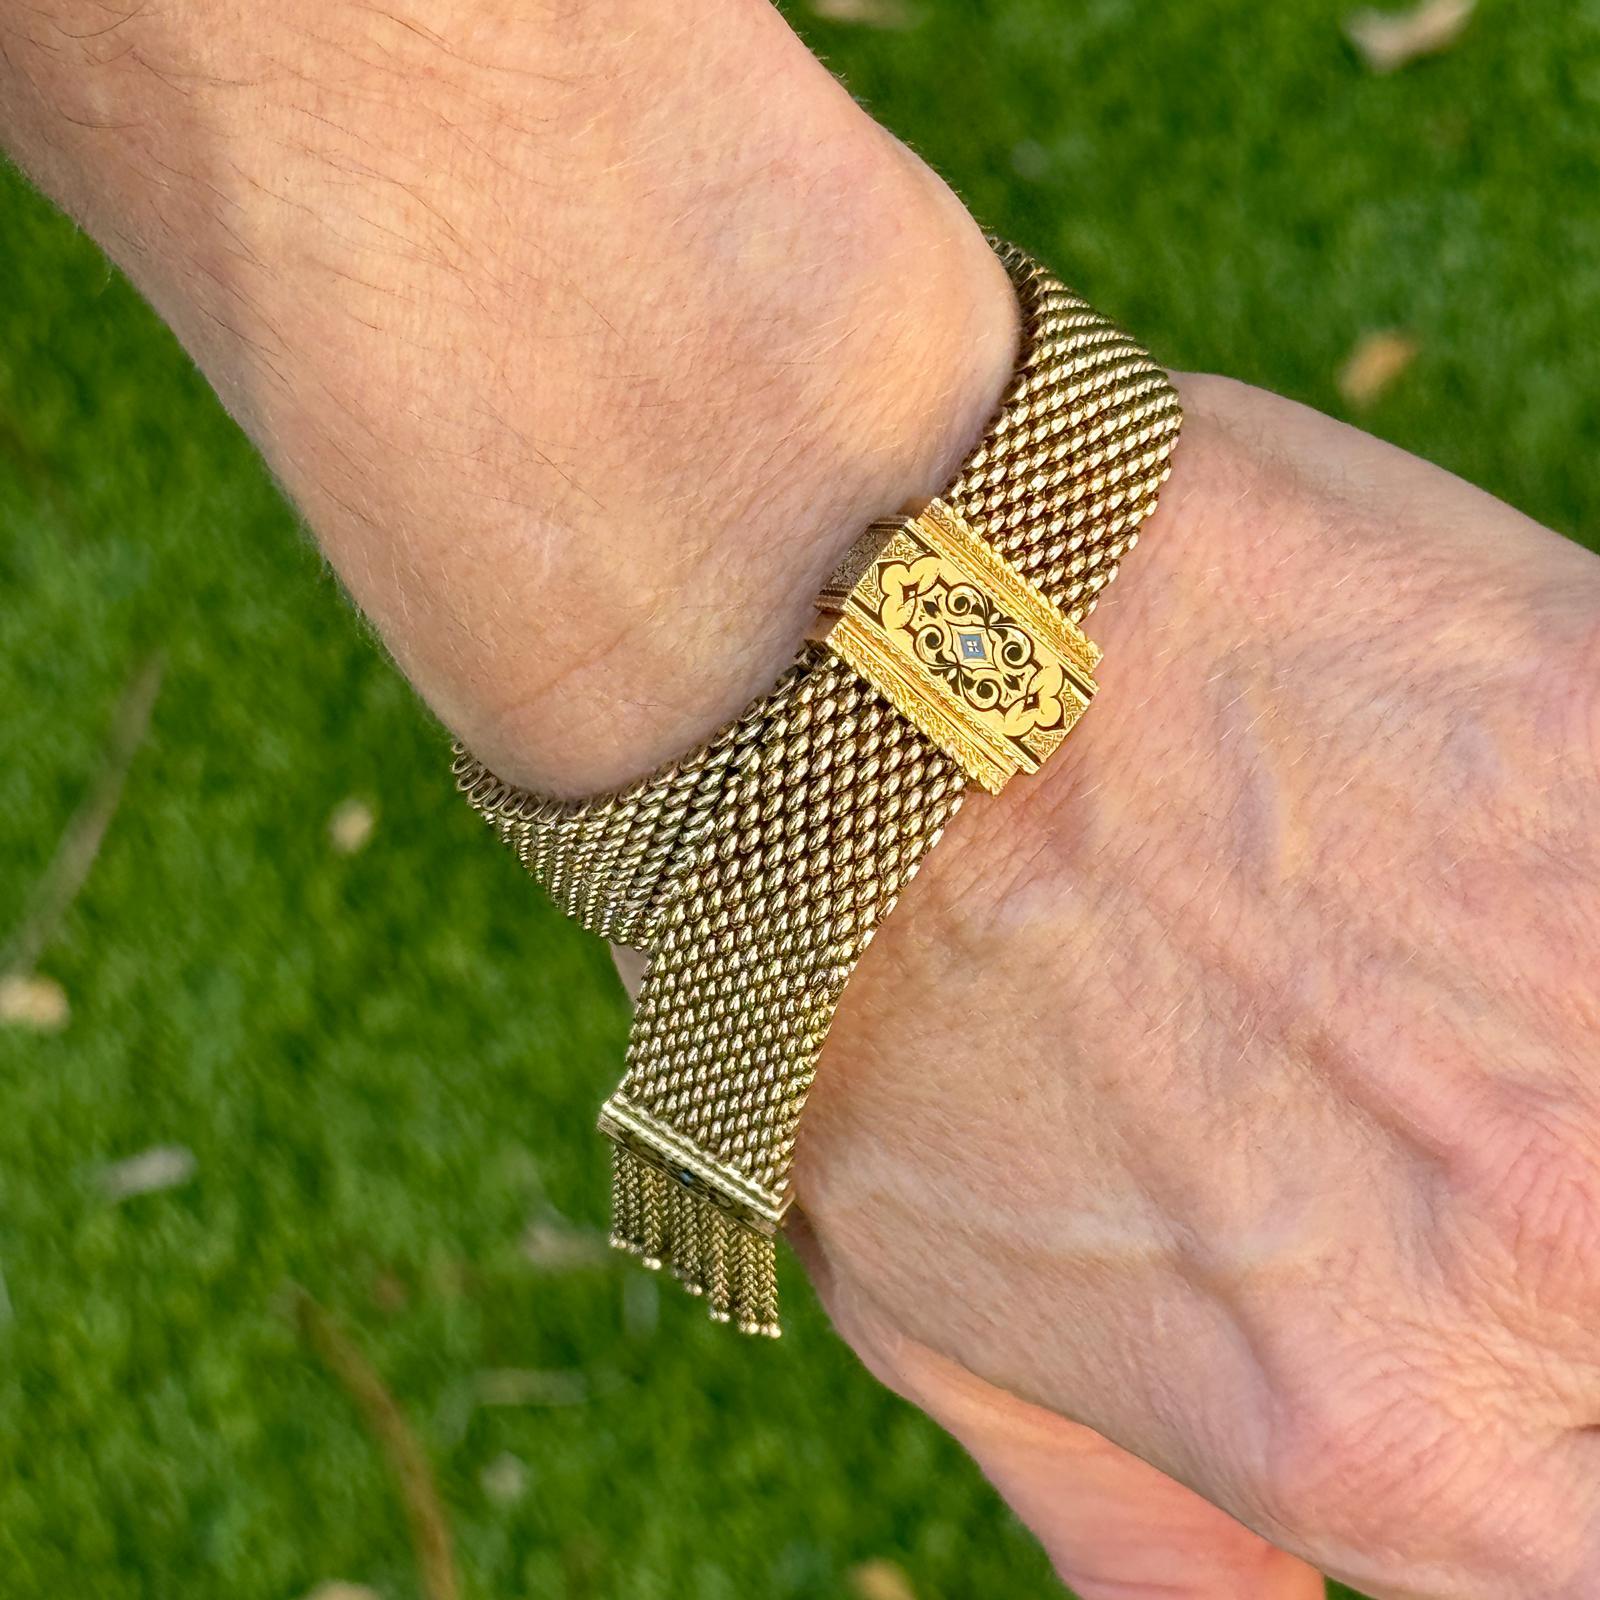 Magnifique bracelet à glands de style victorien en or jaune 14 carats. Le bracelet en or tressé est orné d'un motif en émail noir, de glands et d'une fermeture à glissière. Il peut donc être porté par toutes les tailles de poignet. Le bracelet